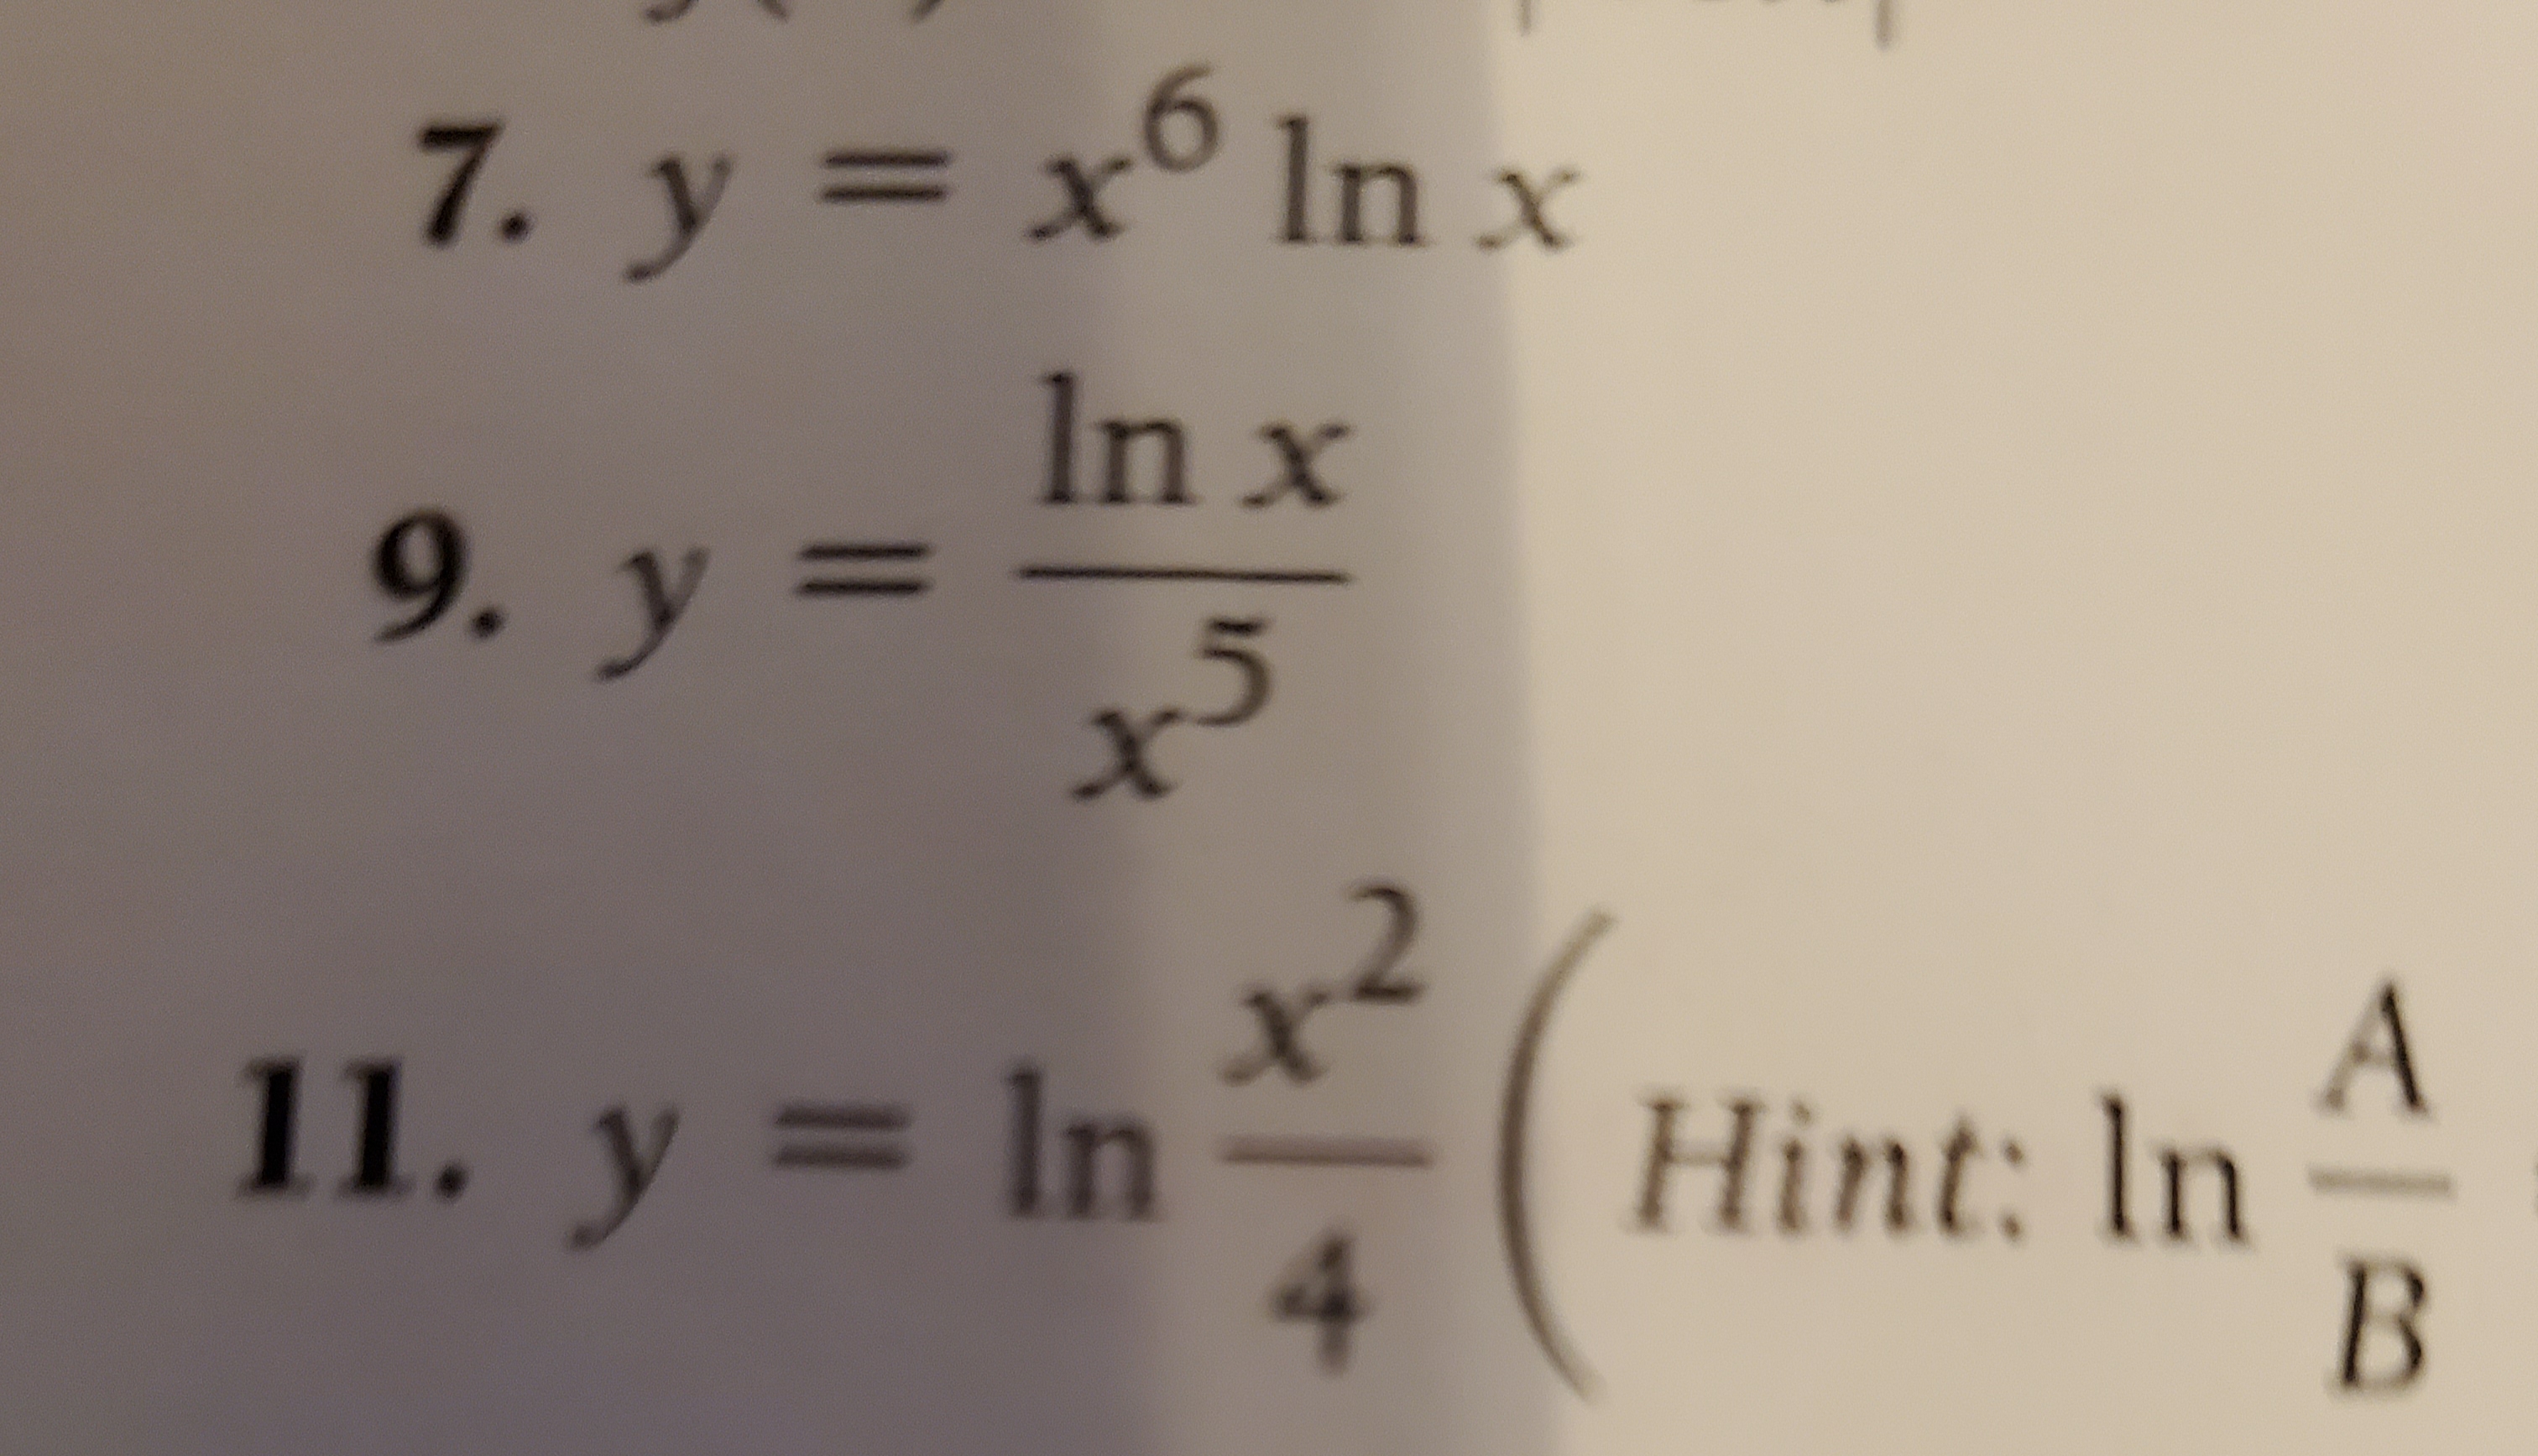 7. y = x6 In x
In x
9. y =
2
X
A
Hint: In
B
11. y = ln
4
